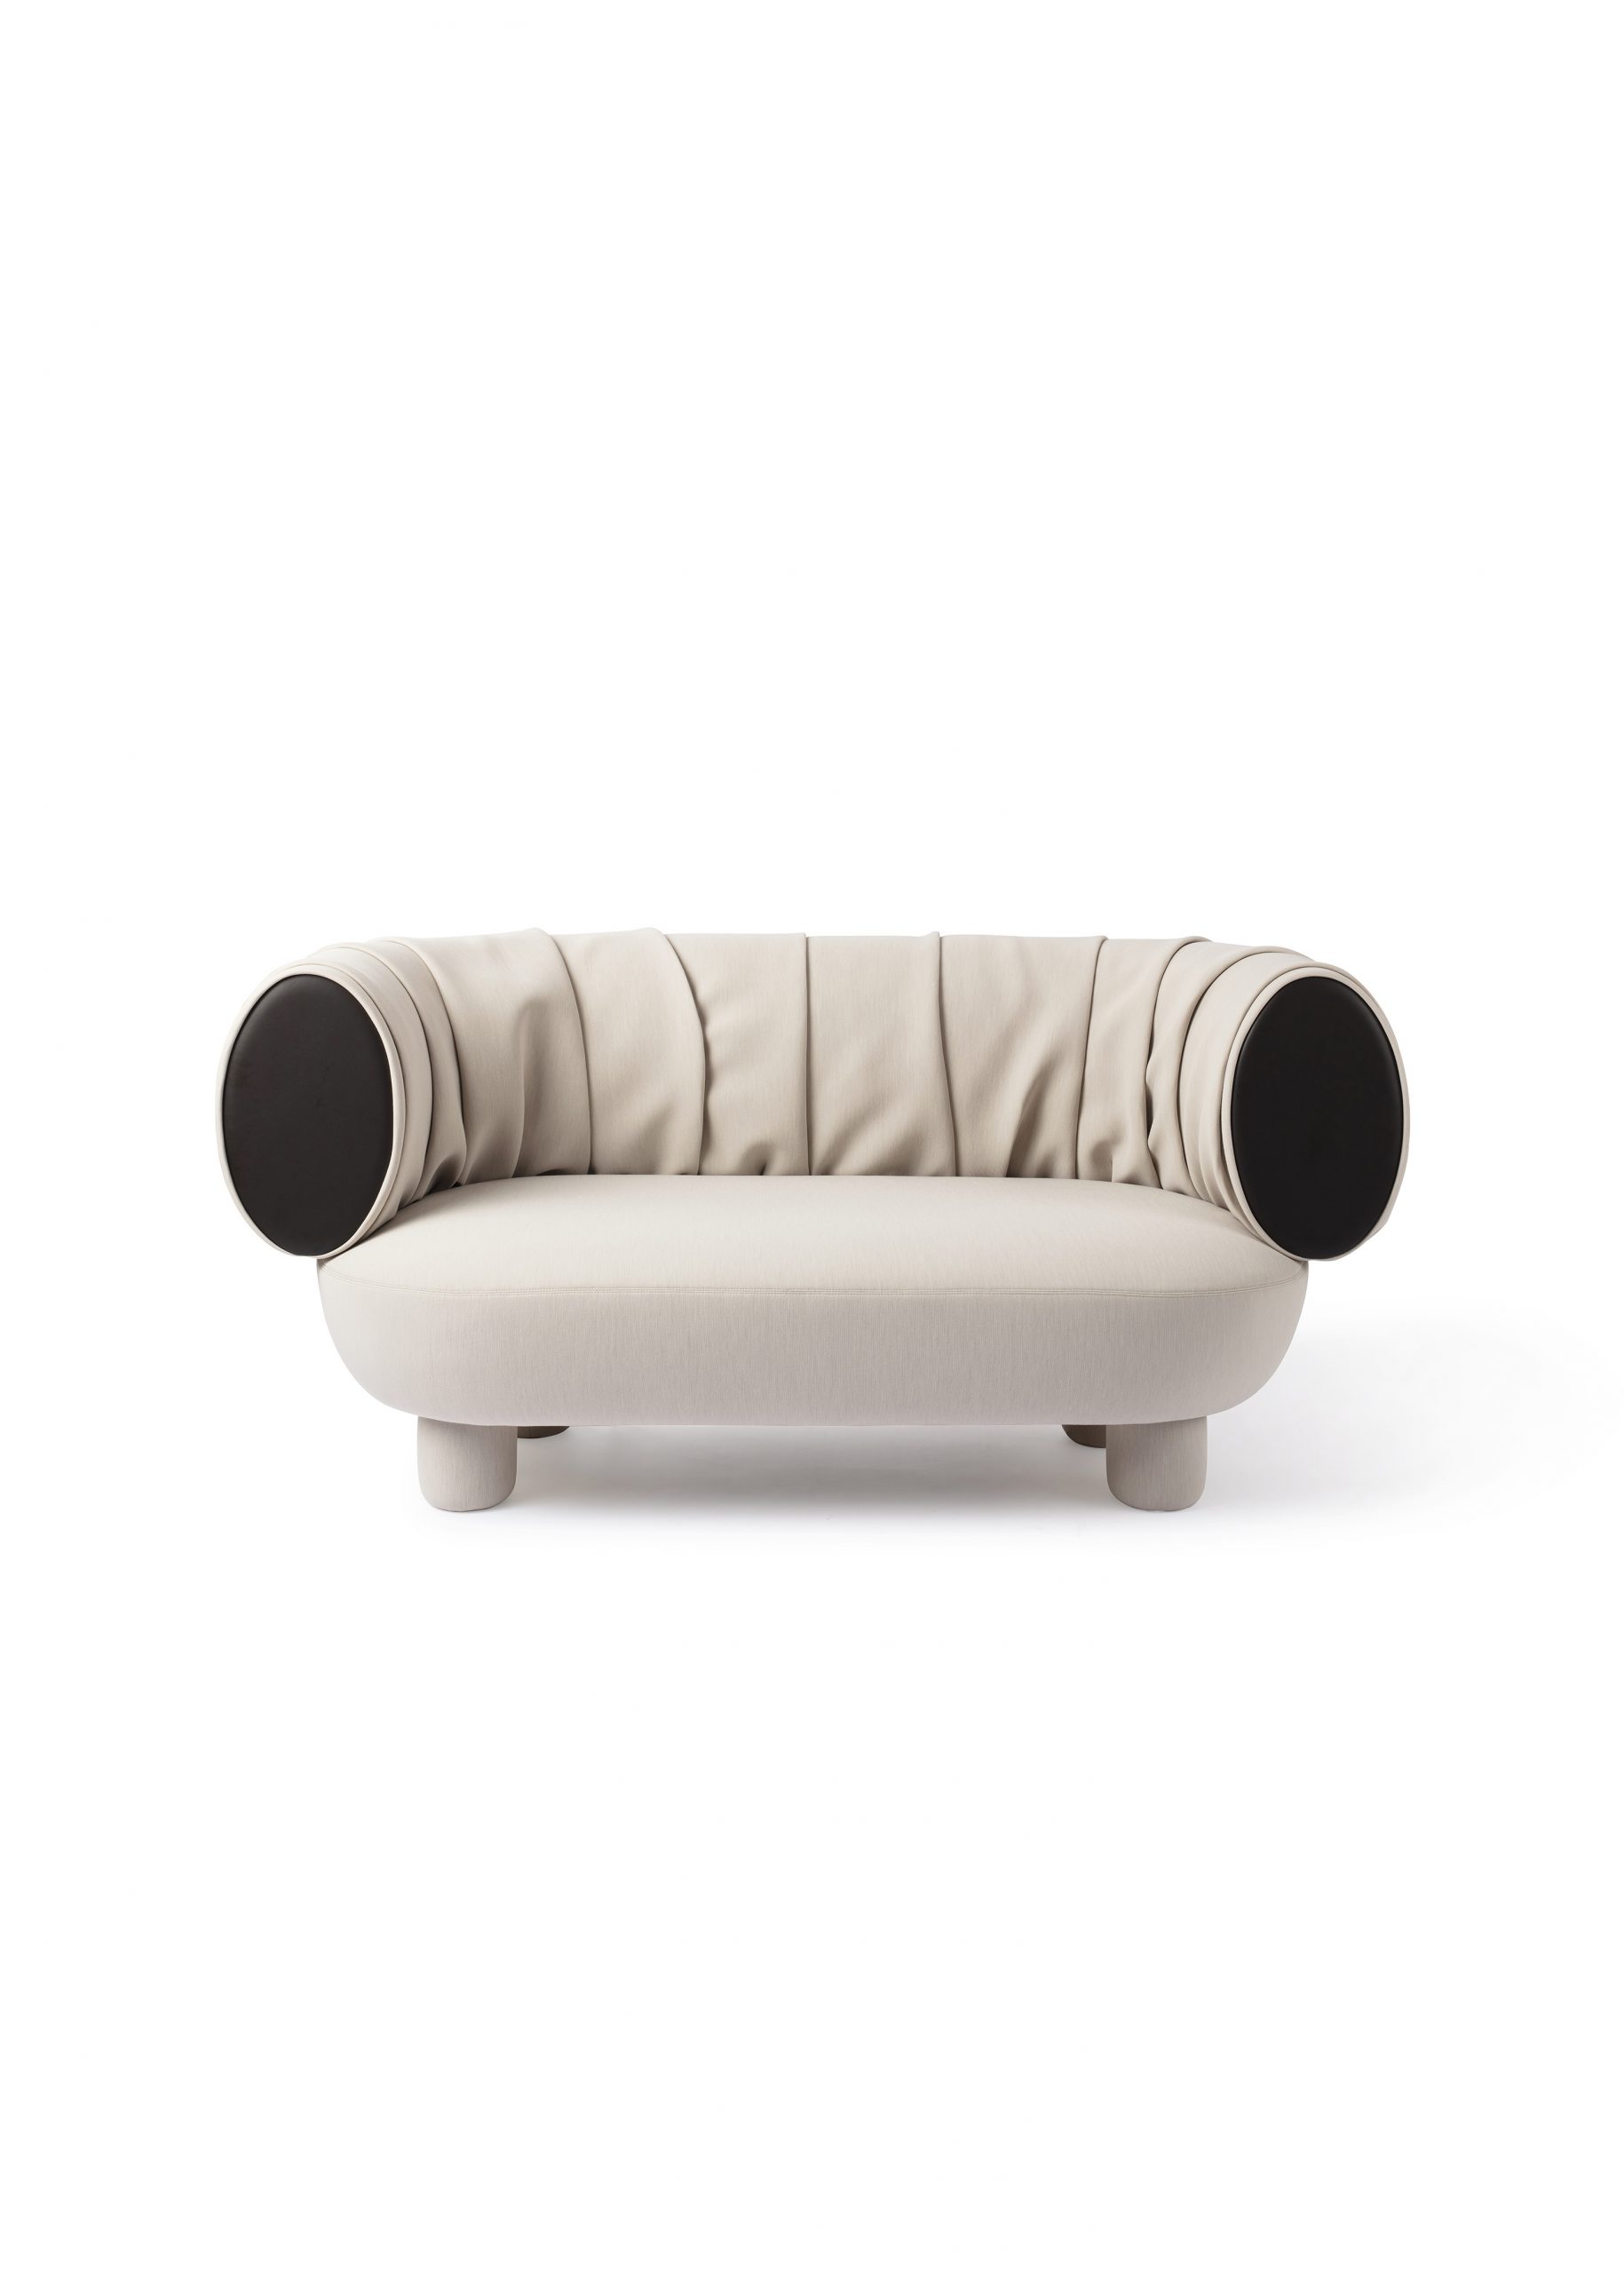 Canapé Sumo sofa Maison Dada